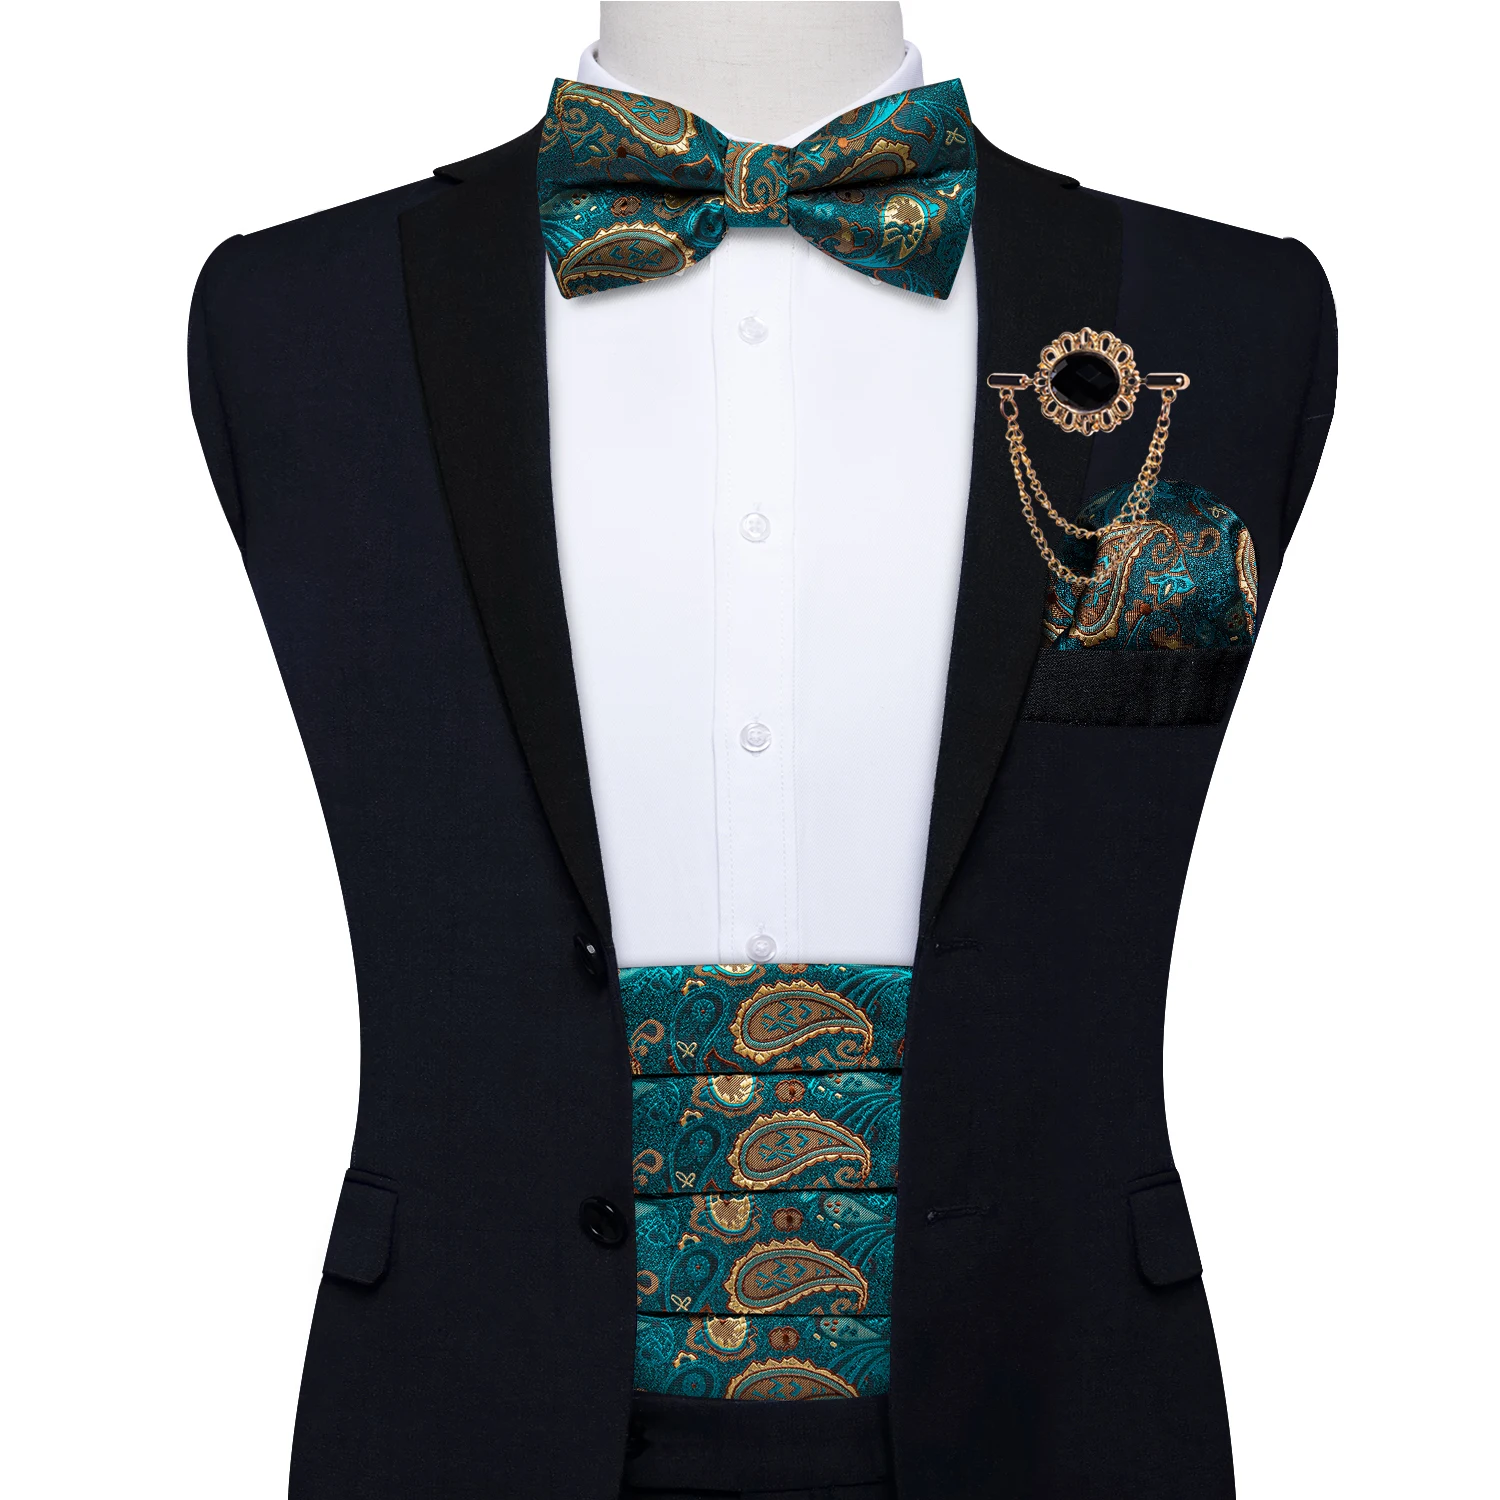 Teal Paisley мужской широкий пояс для смокинга Шелковый галстук-бабочка набор мужской свадебный костюм пояс эластичный пояс для мужчин смокинг широкий пояс DiBanGu